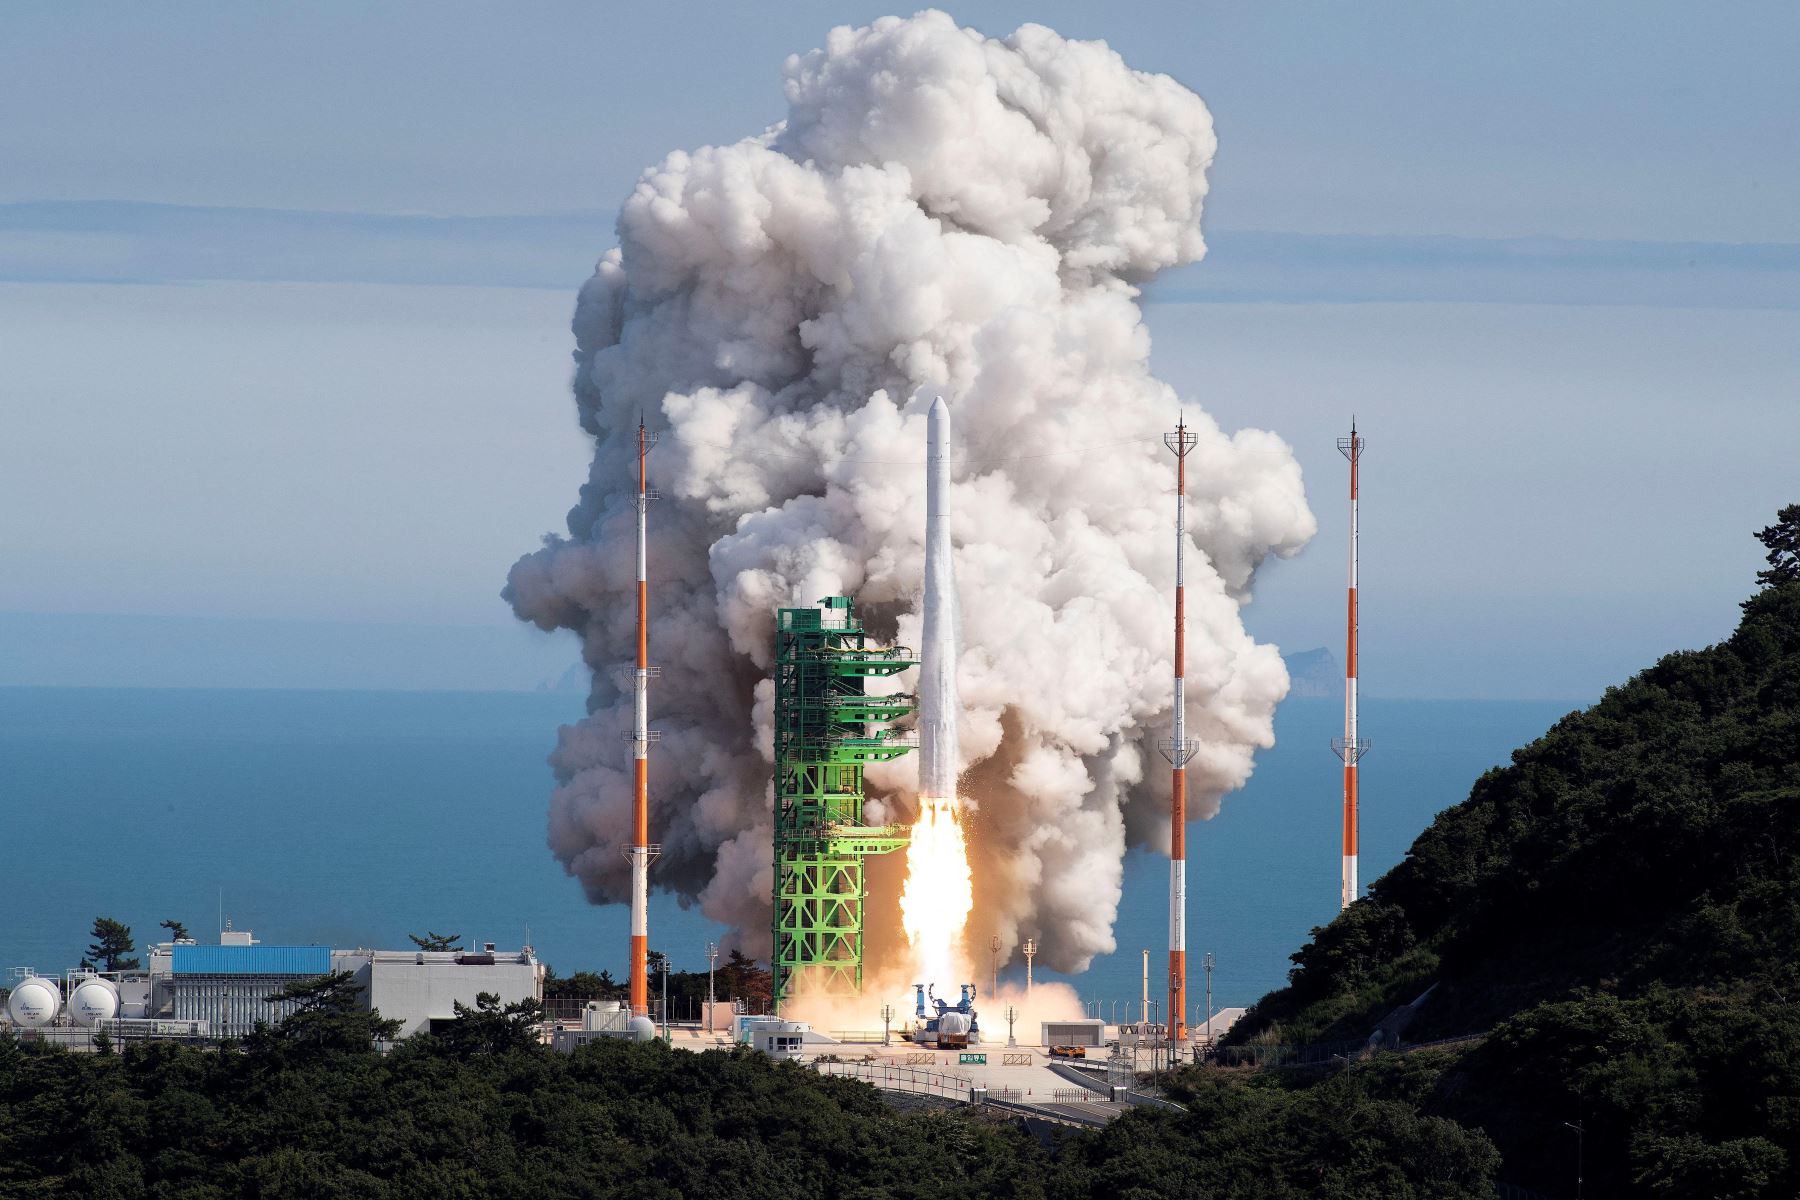 Corea de Sur lanzó con éxito su cohete espacial Nuri, un paso importante para la industria espacial del país asiático, que se convierte en uno de los diez del mundo capaces de poner un satélite en órbita con tecnología propia. Foto: AFP